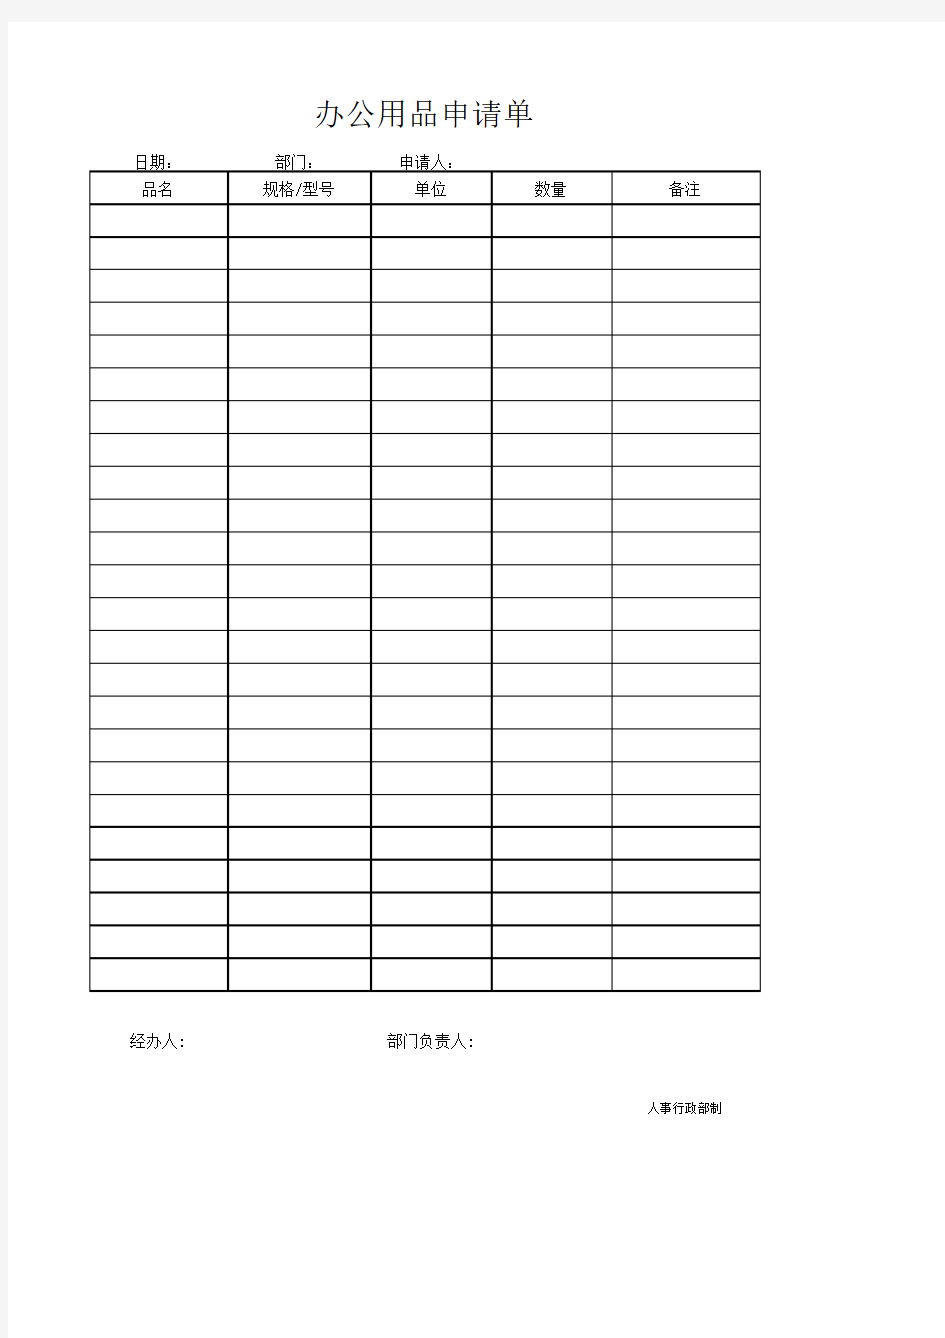 办公用品领用登记表(模板)